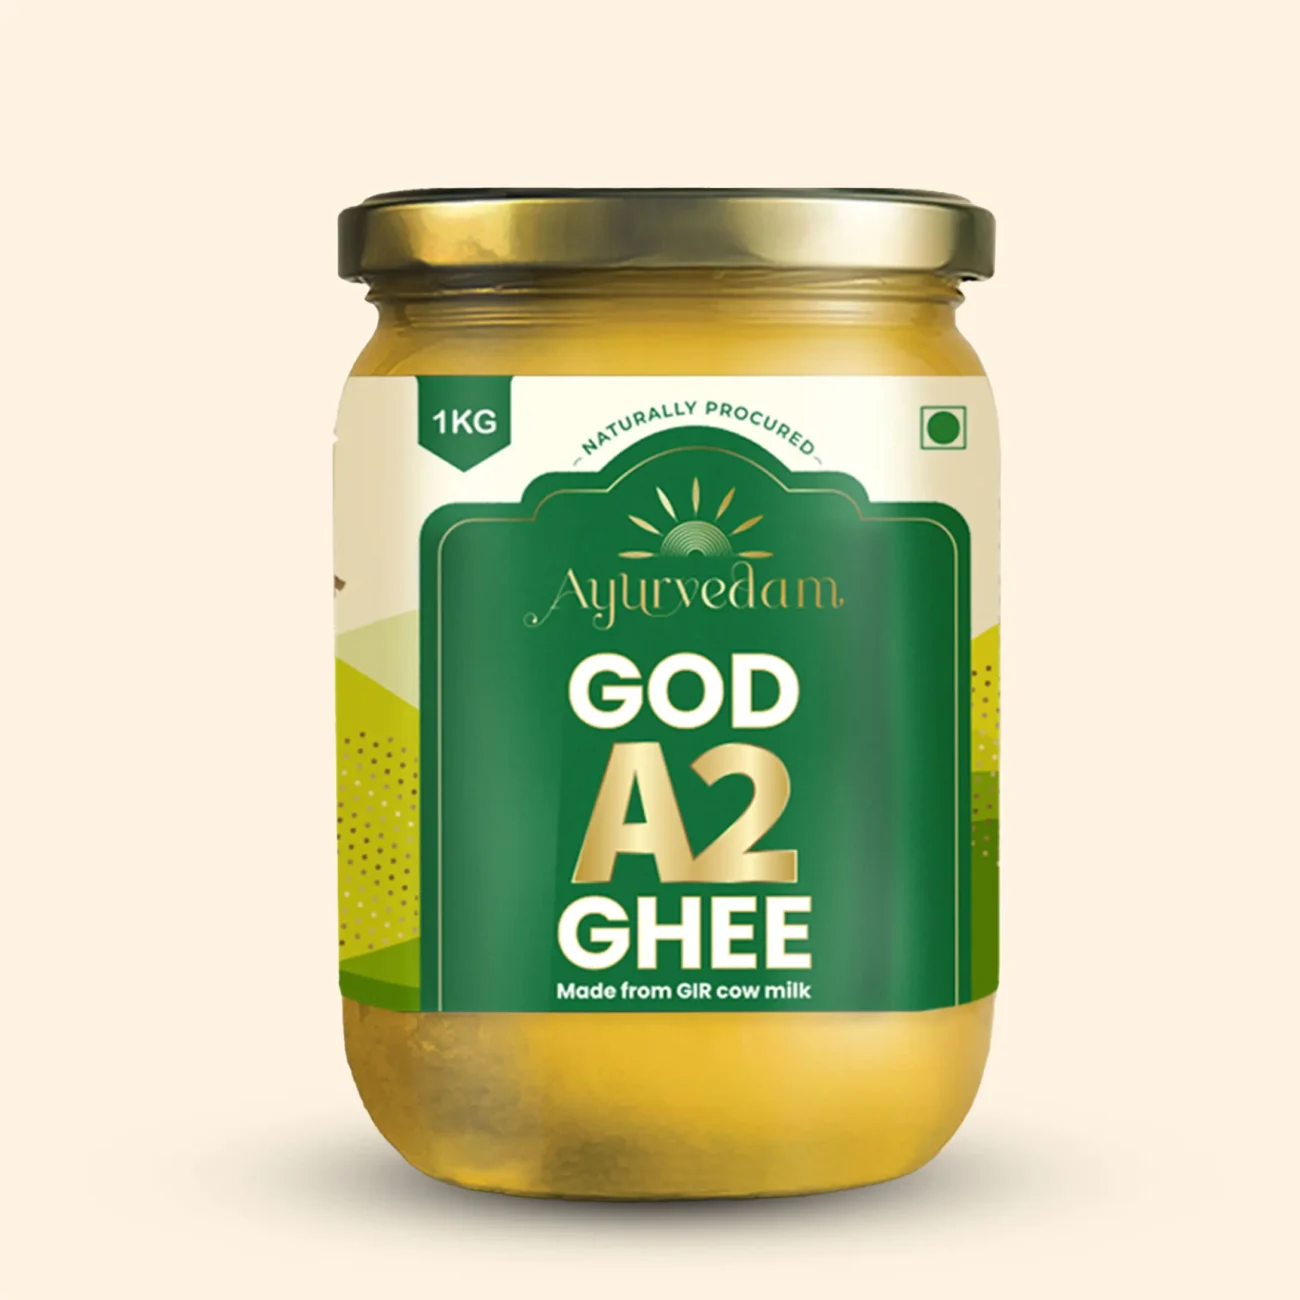 A jar of God A2 Ghee by Ayurvedam